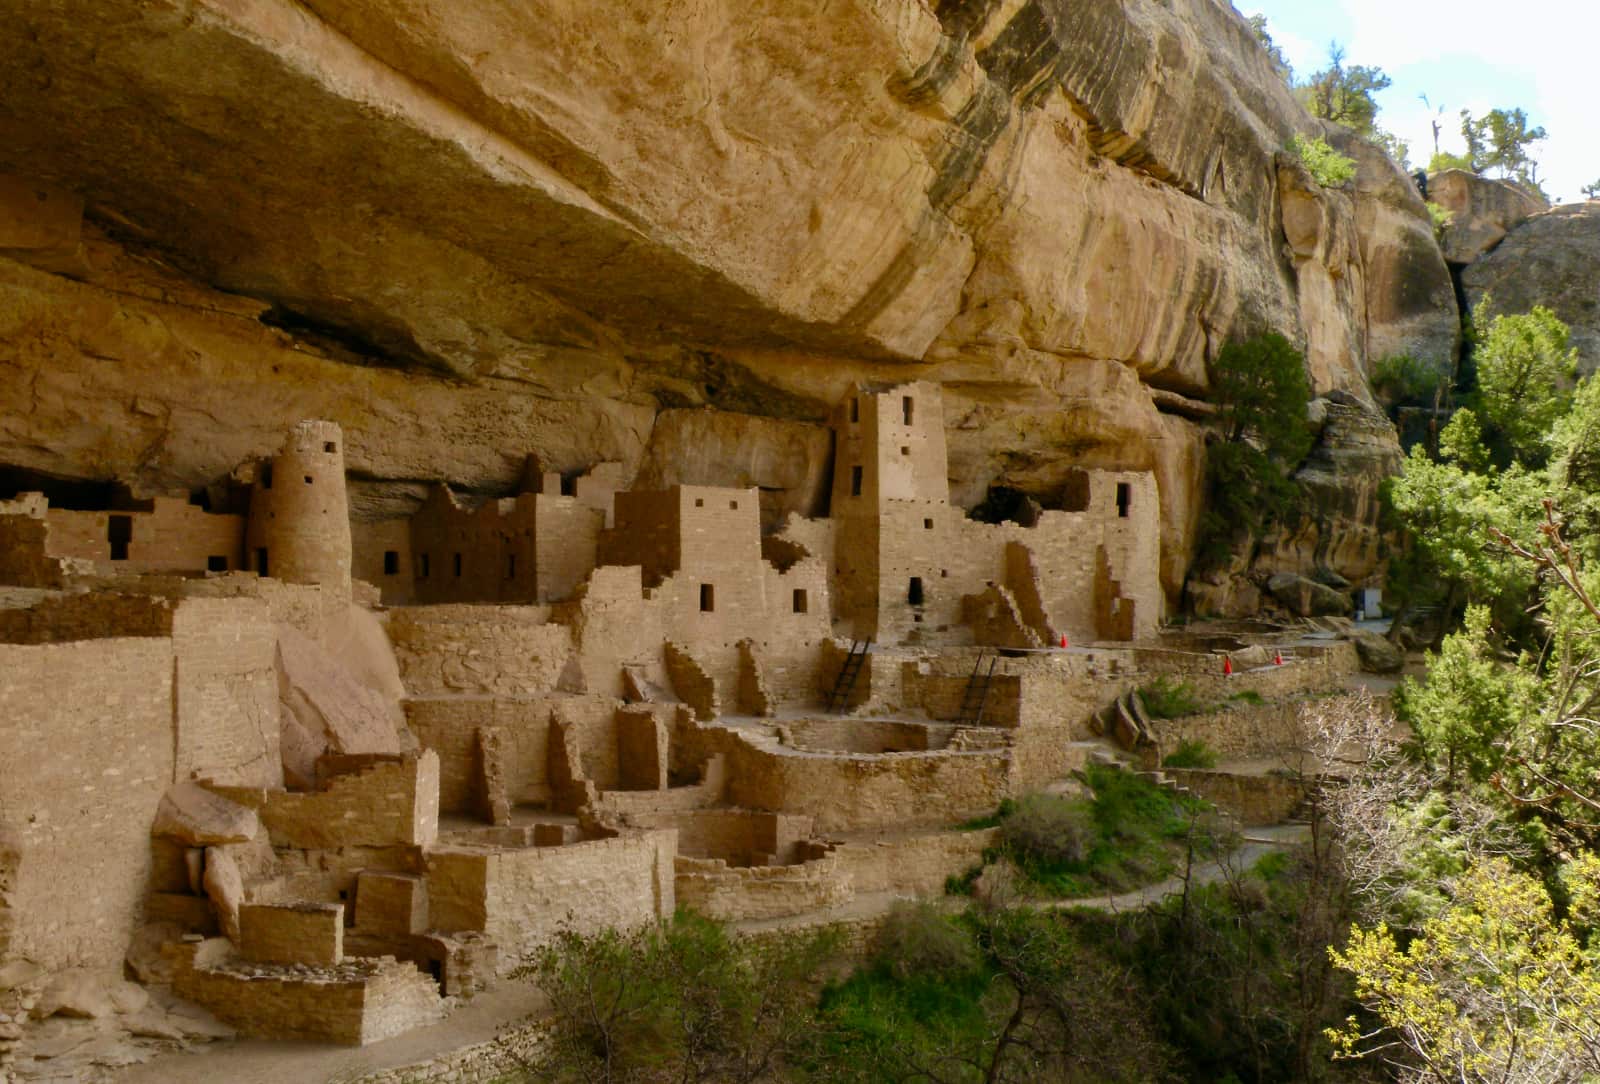 Indigenous stone buildings built under rock face